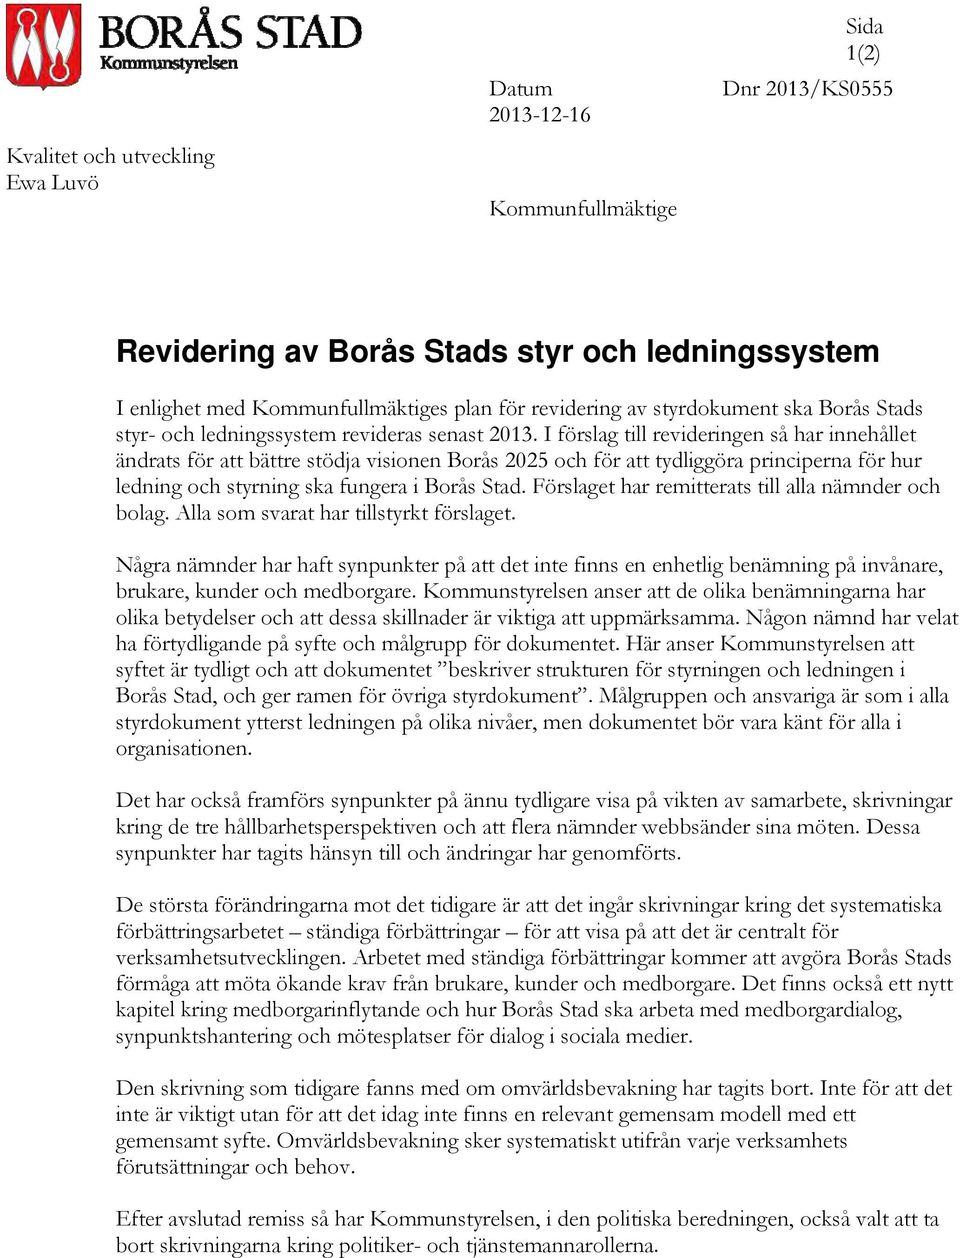 I förslag till revideringen så har innehållet ändrats för att bättre stödja visionen Borås 2025 och för att tydliggöra principerna för hur ledning och styrning ska fungera i Borås Stad.